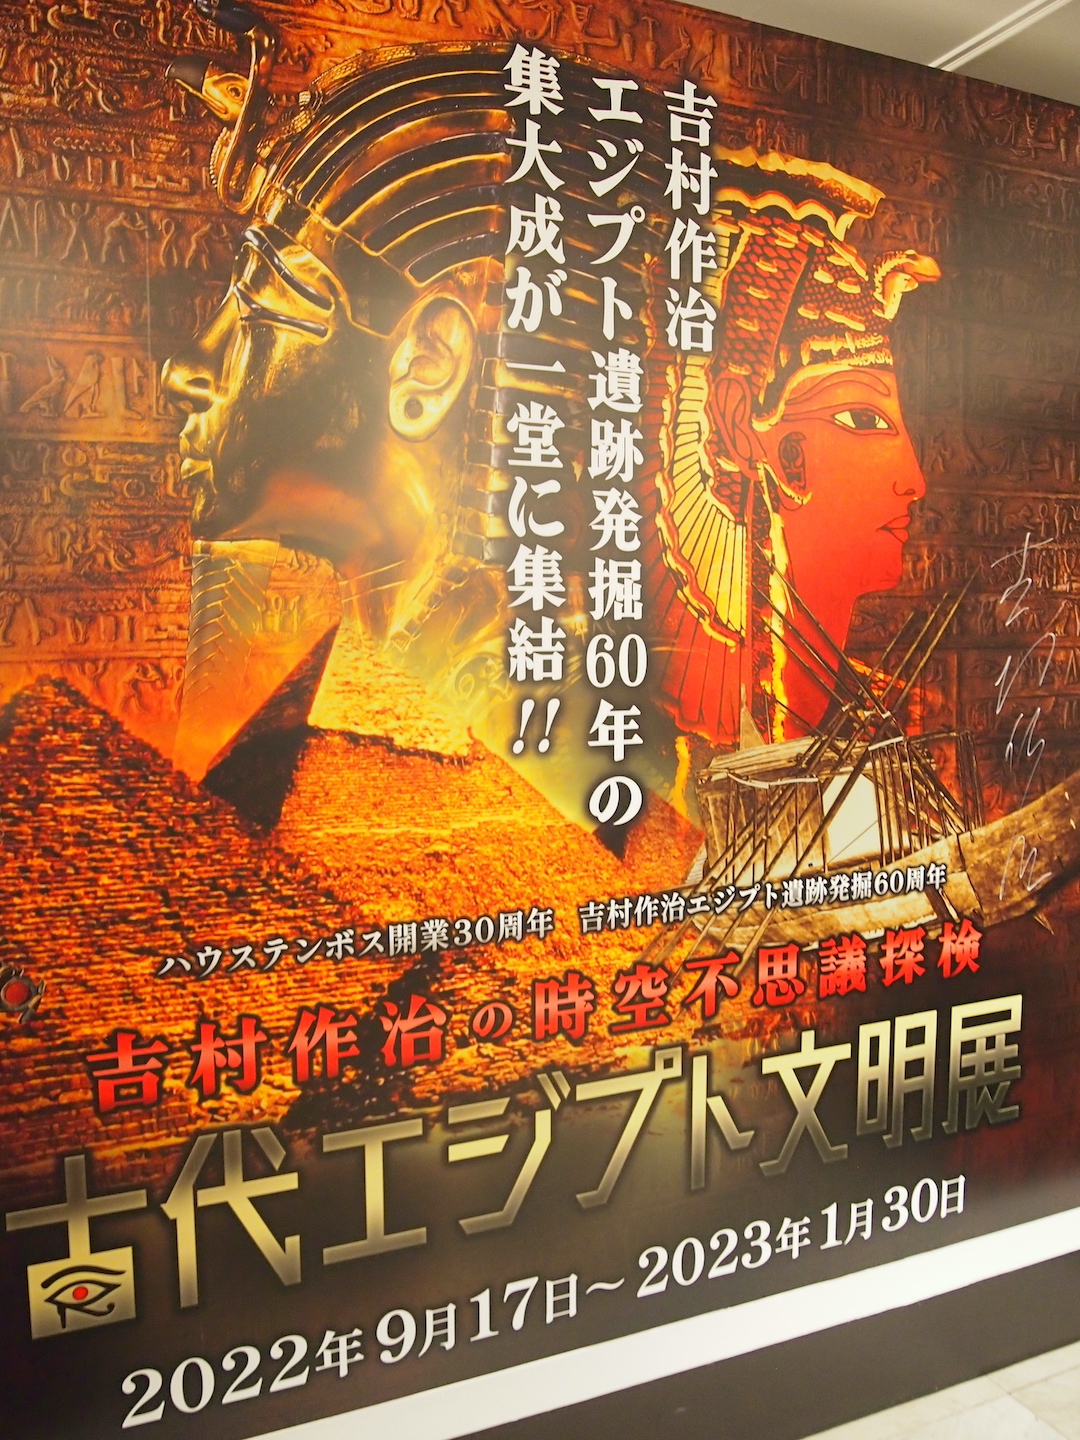 吉村作治の時空不思議探検「古代エジプト文明展」inハウステンボス 